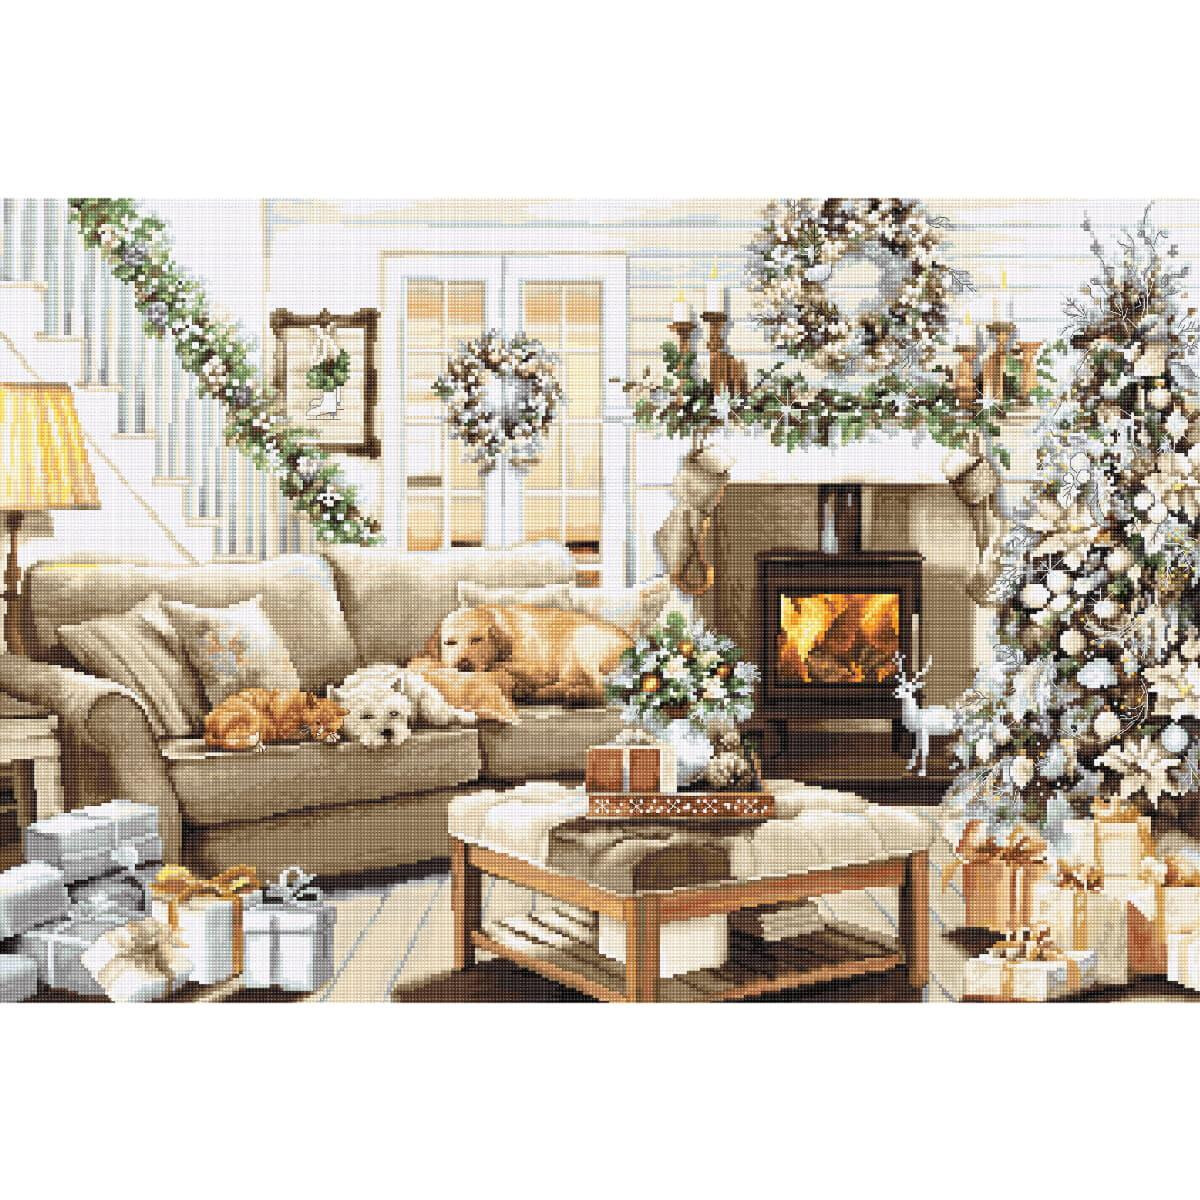 Un accogliente salotto decorato per il Natale. Sulla...